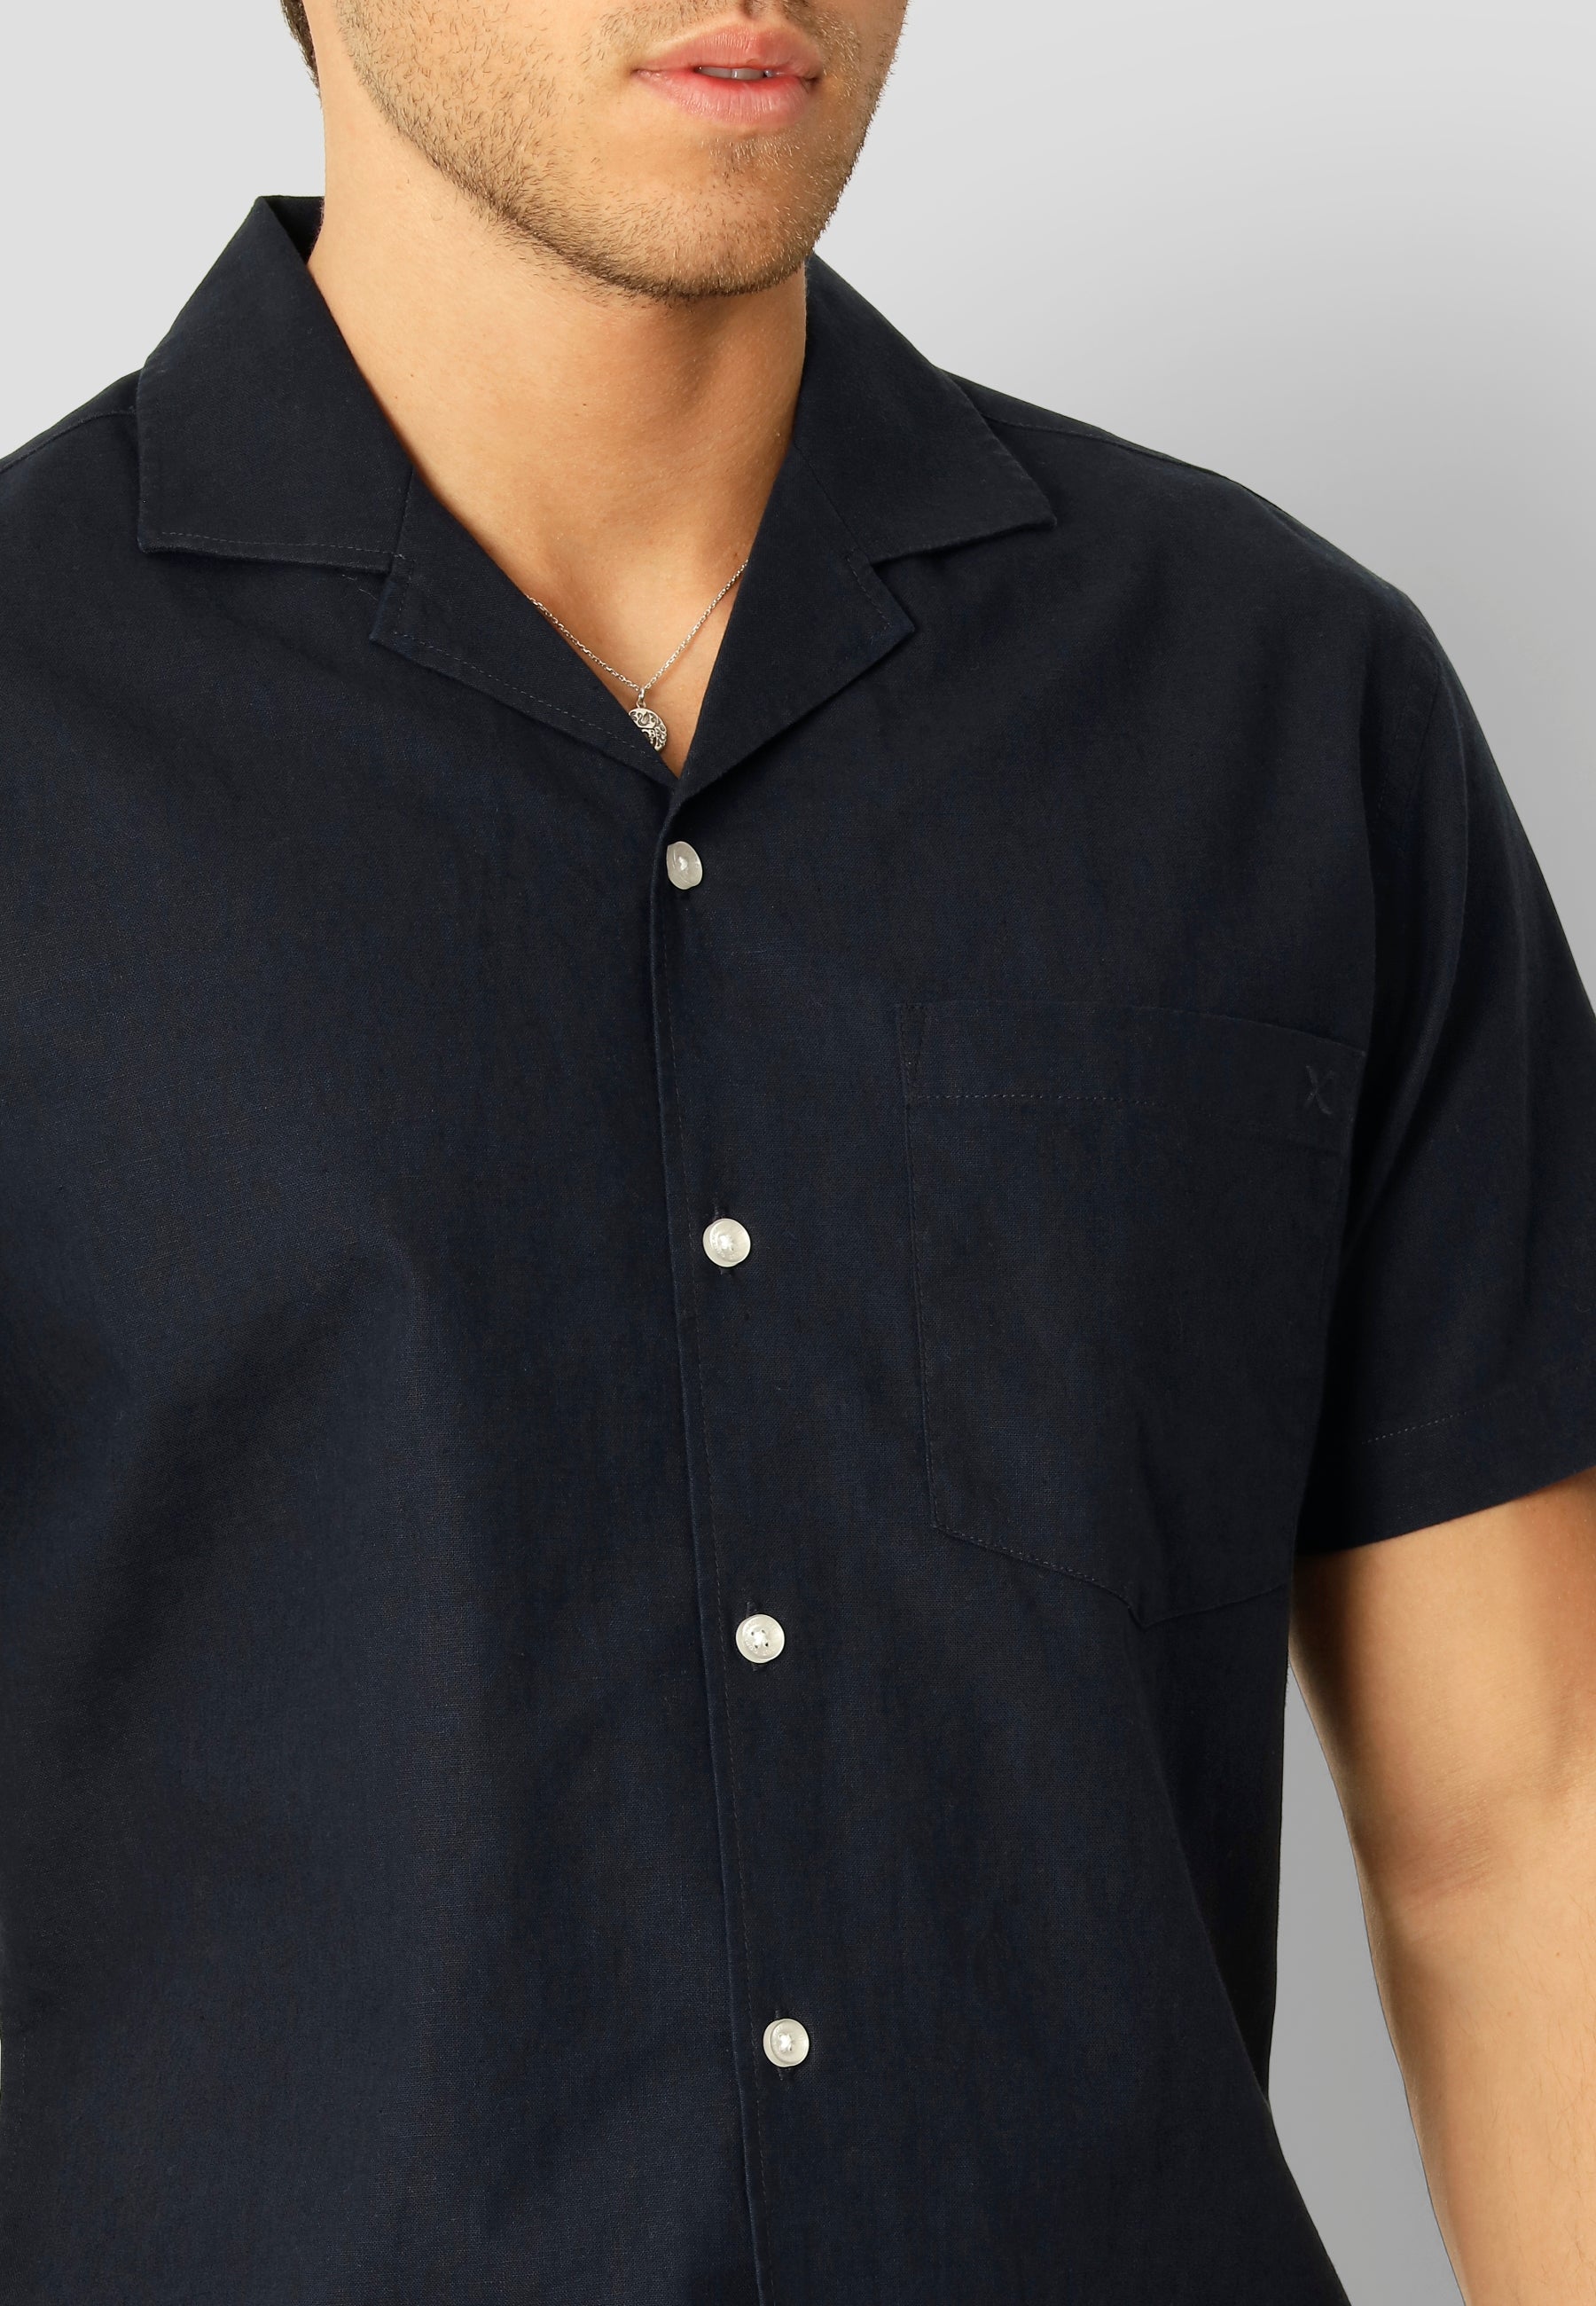 Bowling Cotton Linen Shirt S/S - Navy